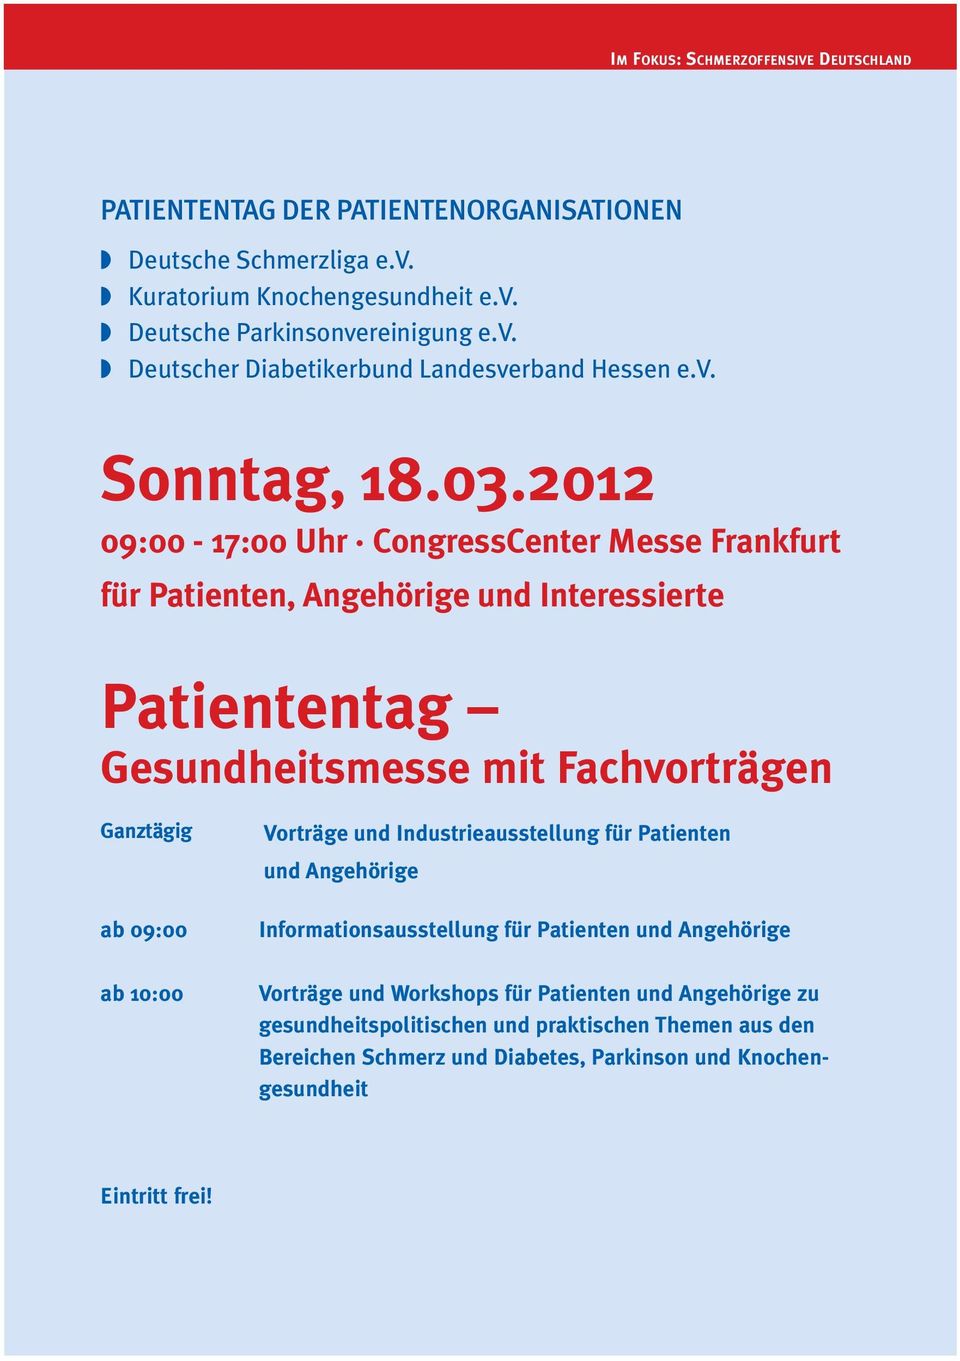 2012 09:00-17:00 Uhr CongressCenter Messe Frankfurt für Patienten, Angehörige und Interessierte Patiententag Gesundheitsmesse mit Fachvorträgen Ganztägig ab 09:00 ab 10:00